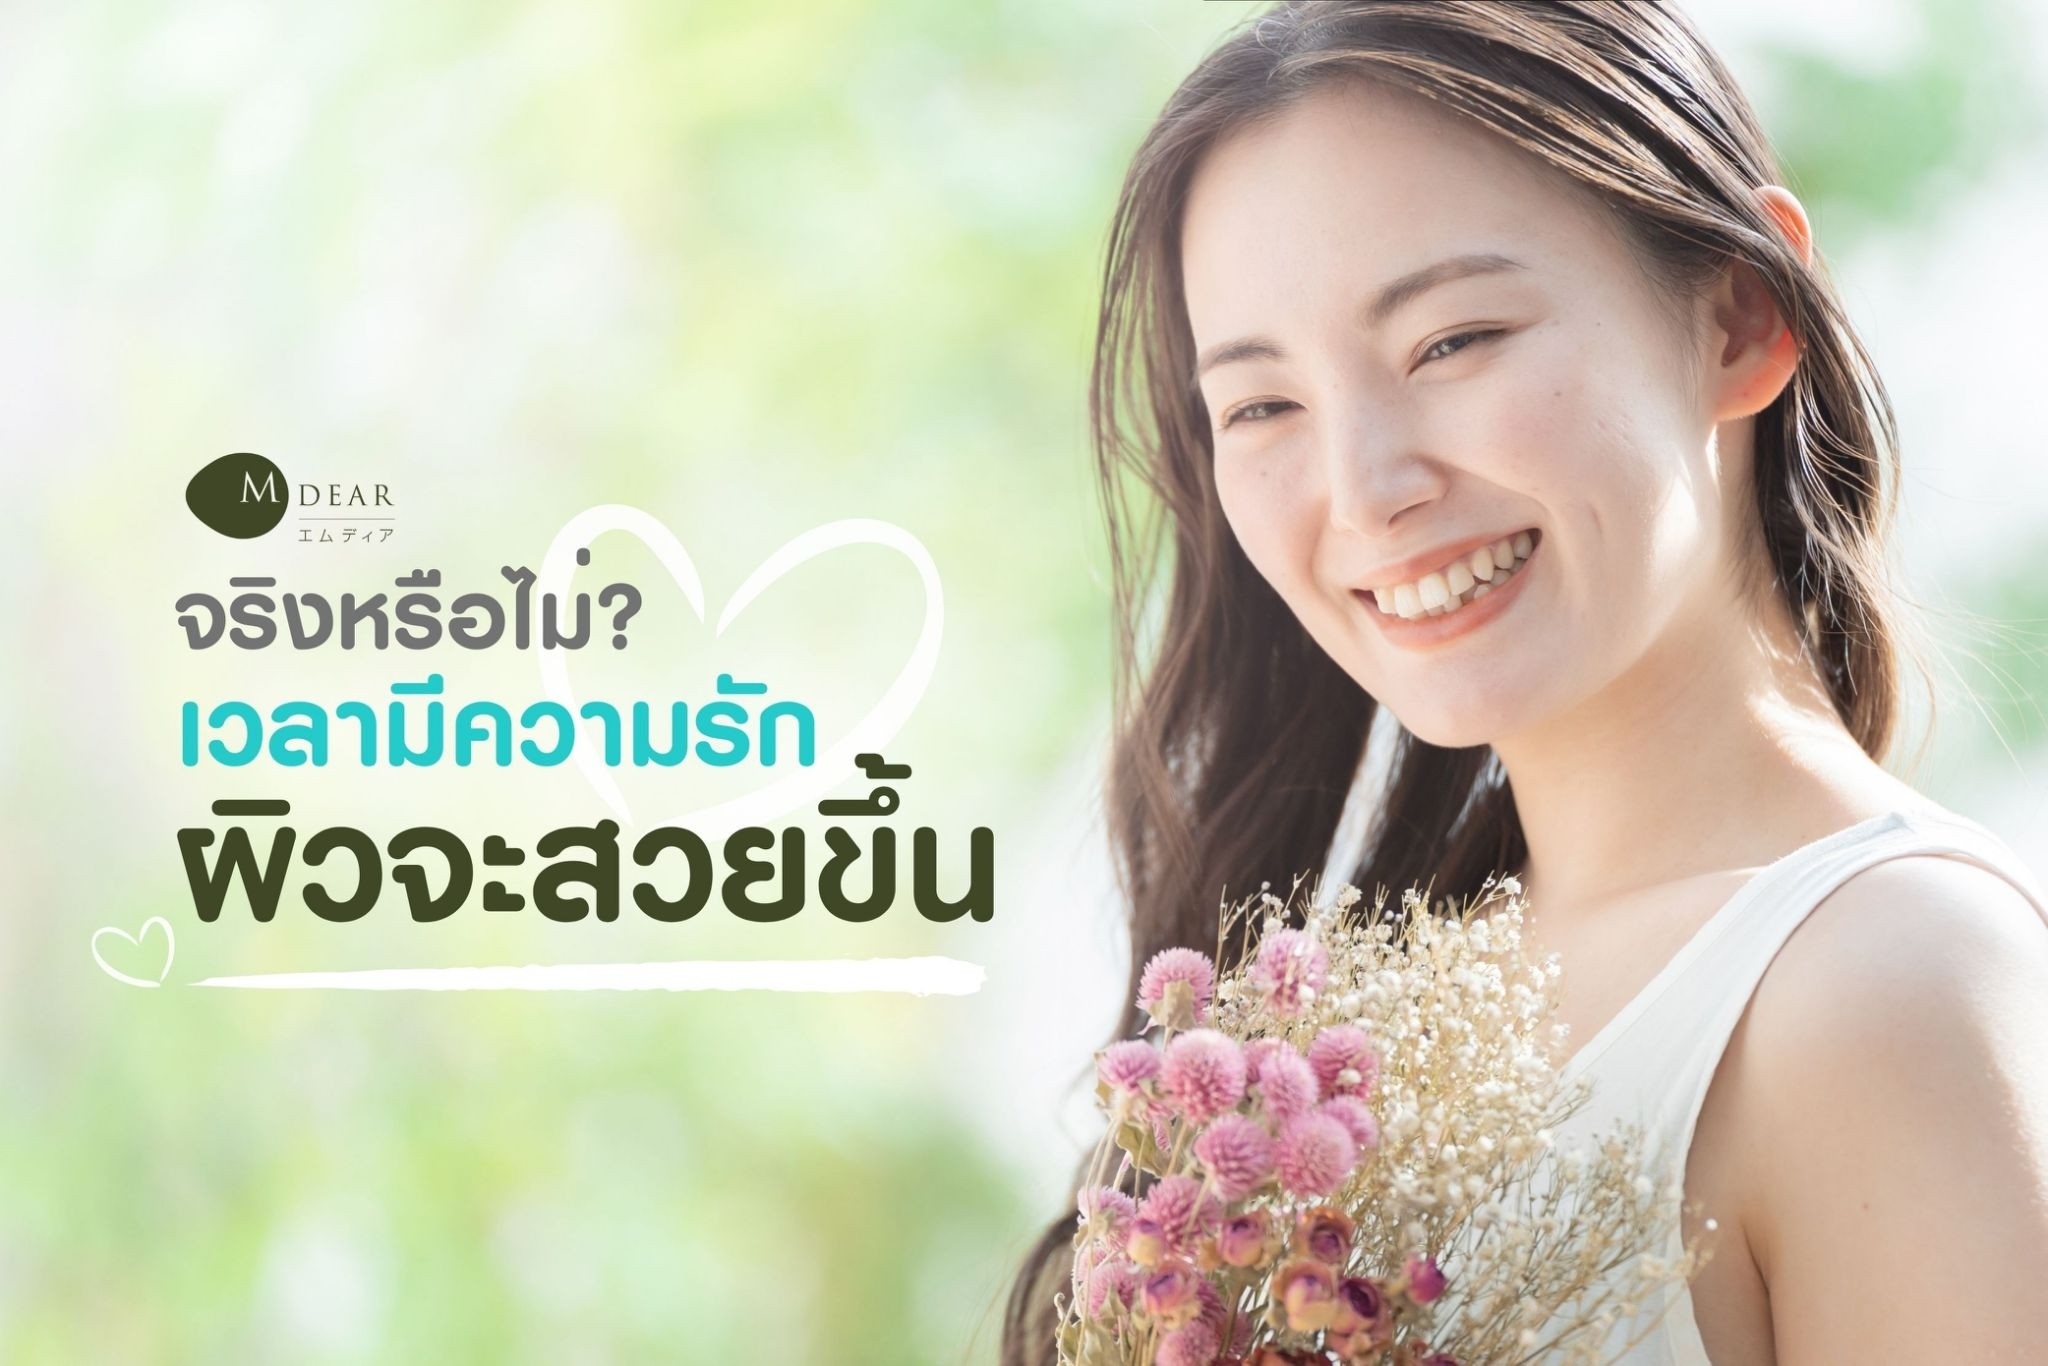 จริงหรือไม่ เวลามีความรัก ผิวจะสวย หน้าใส ขึ้น-Jcomfy-Mdear-Thailand 